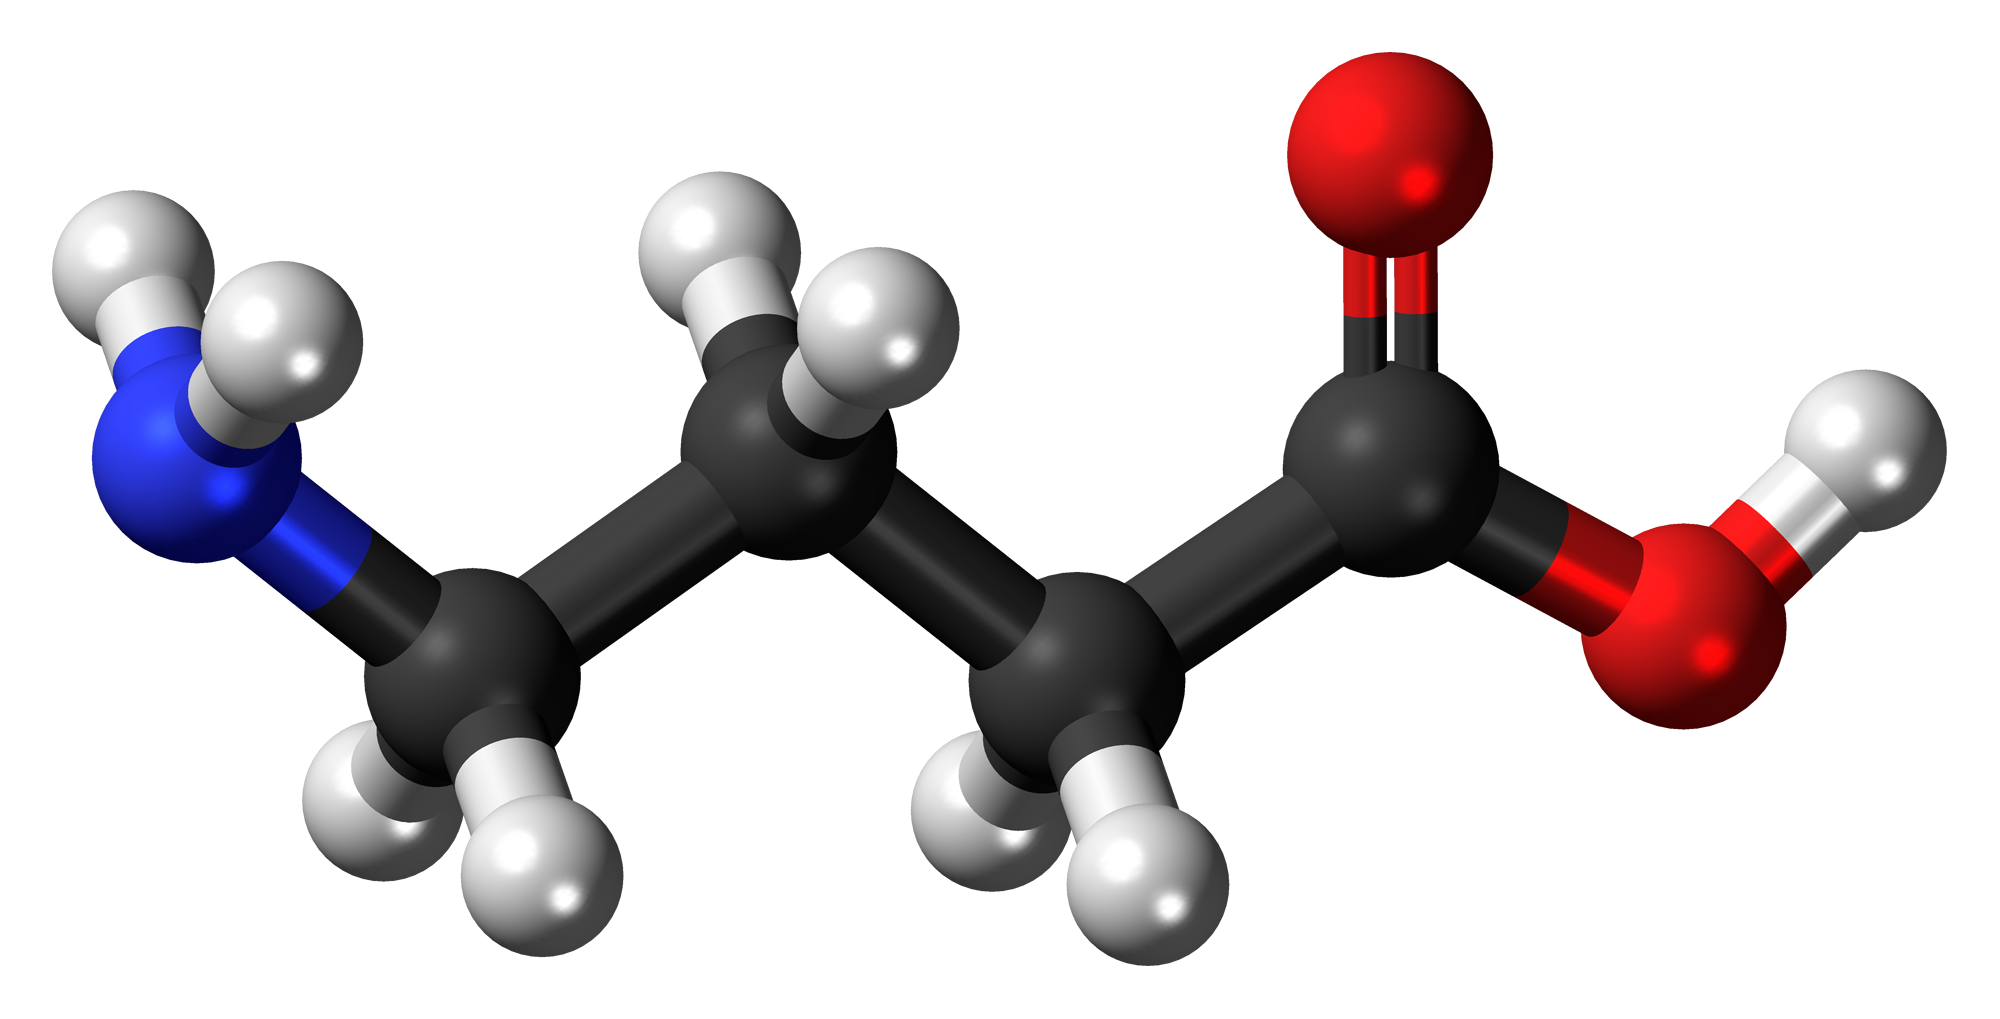 L'acido γ-aminobutirrico o acido gamma-aminobutirrico, generalmente noto con l'acronimo GABA, è la forma più comune di acido γ-aminobutirrico.